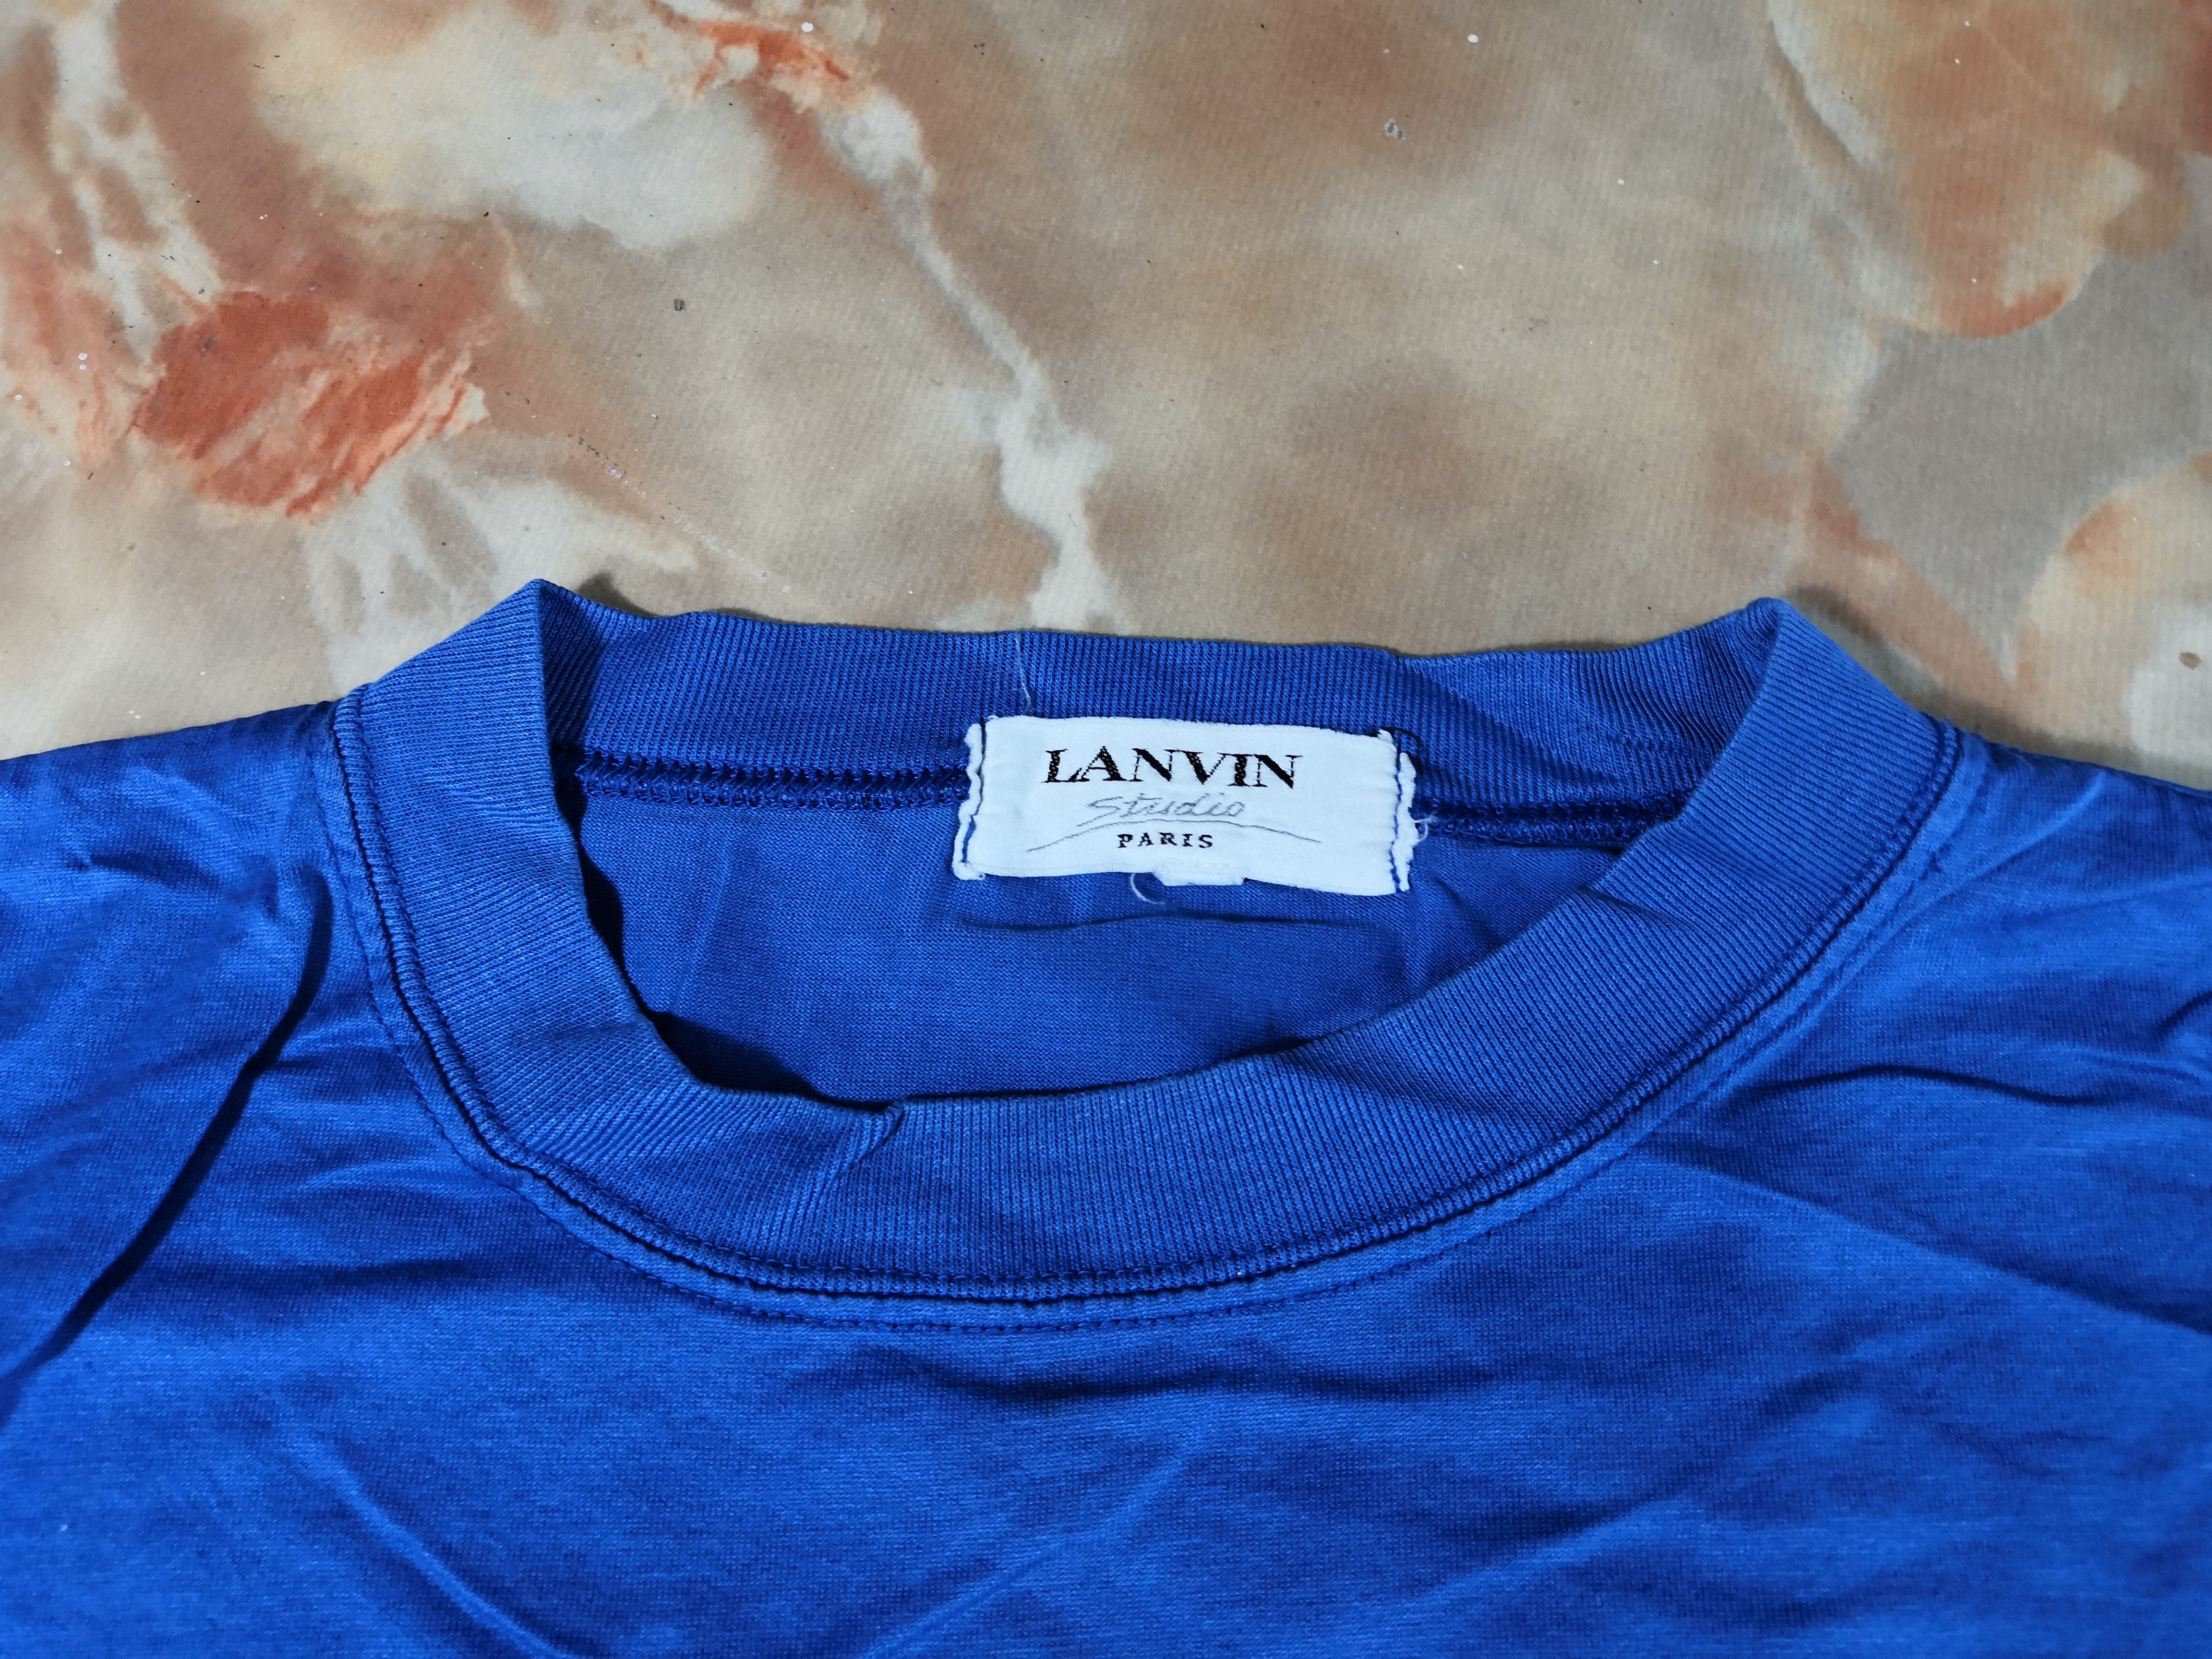 Vintage Lanvin T Shirt Parrot Vintage Lanvin Tee - 5